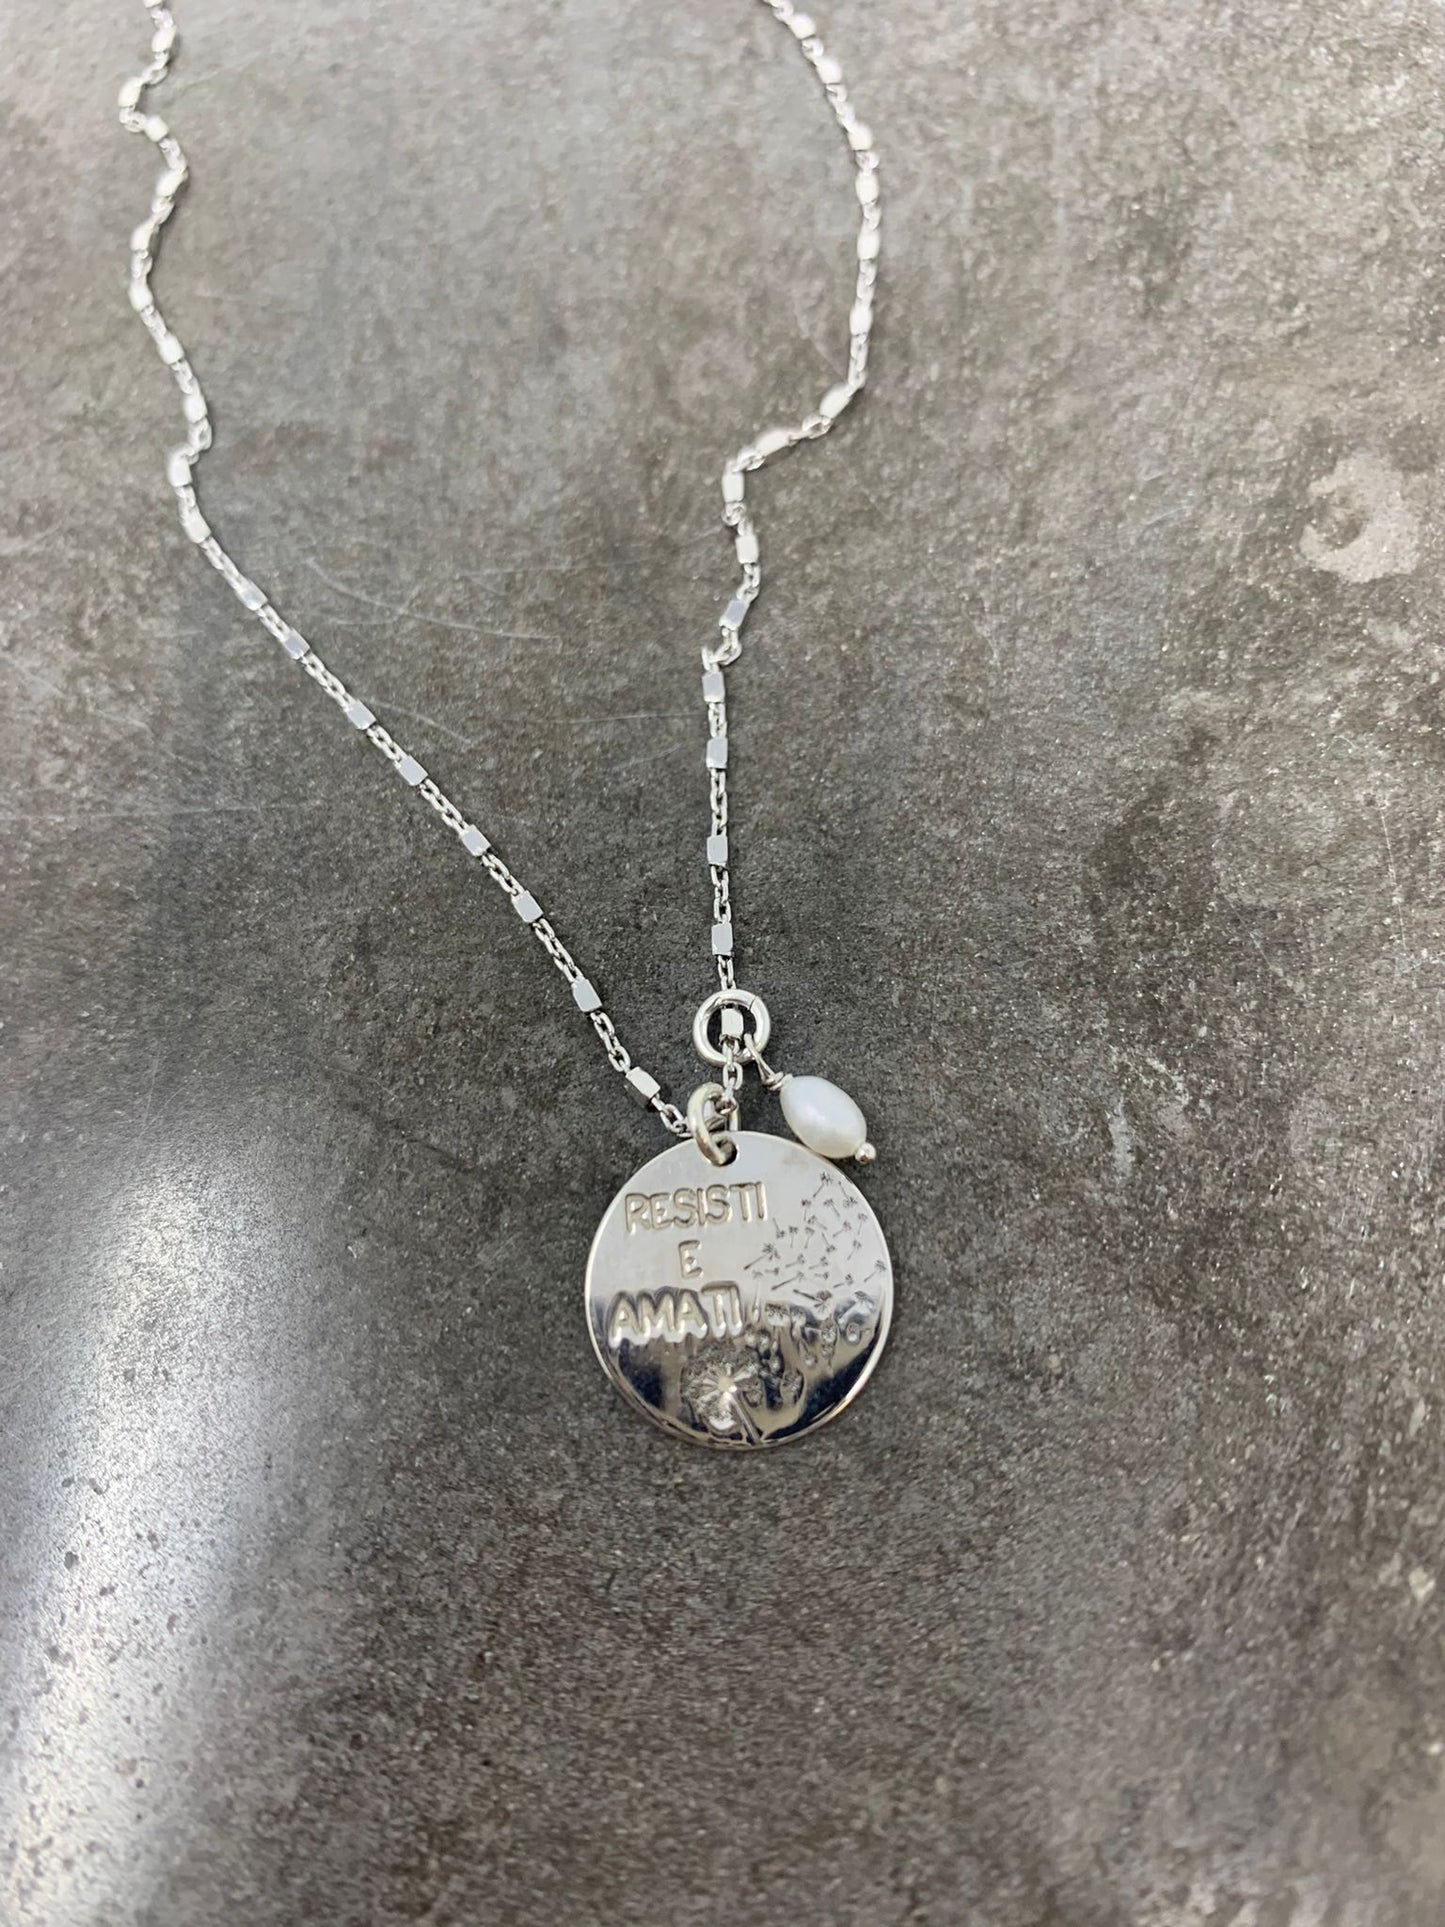 Collana catena dadini argento bianco cm 40 con targhetta personalizzata RESISTI E AMATI e con inciso il soffione ed una piccola perla pendente